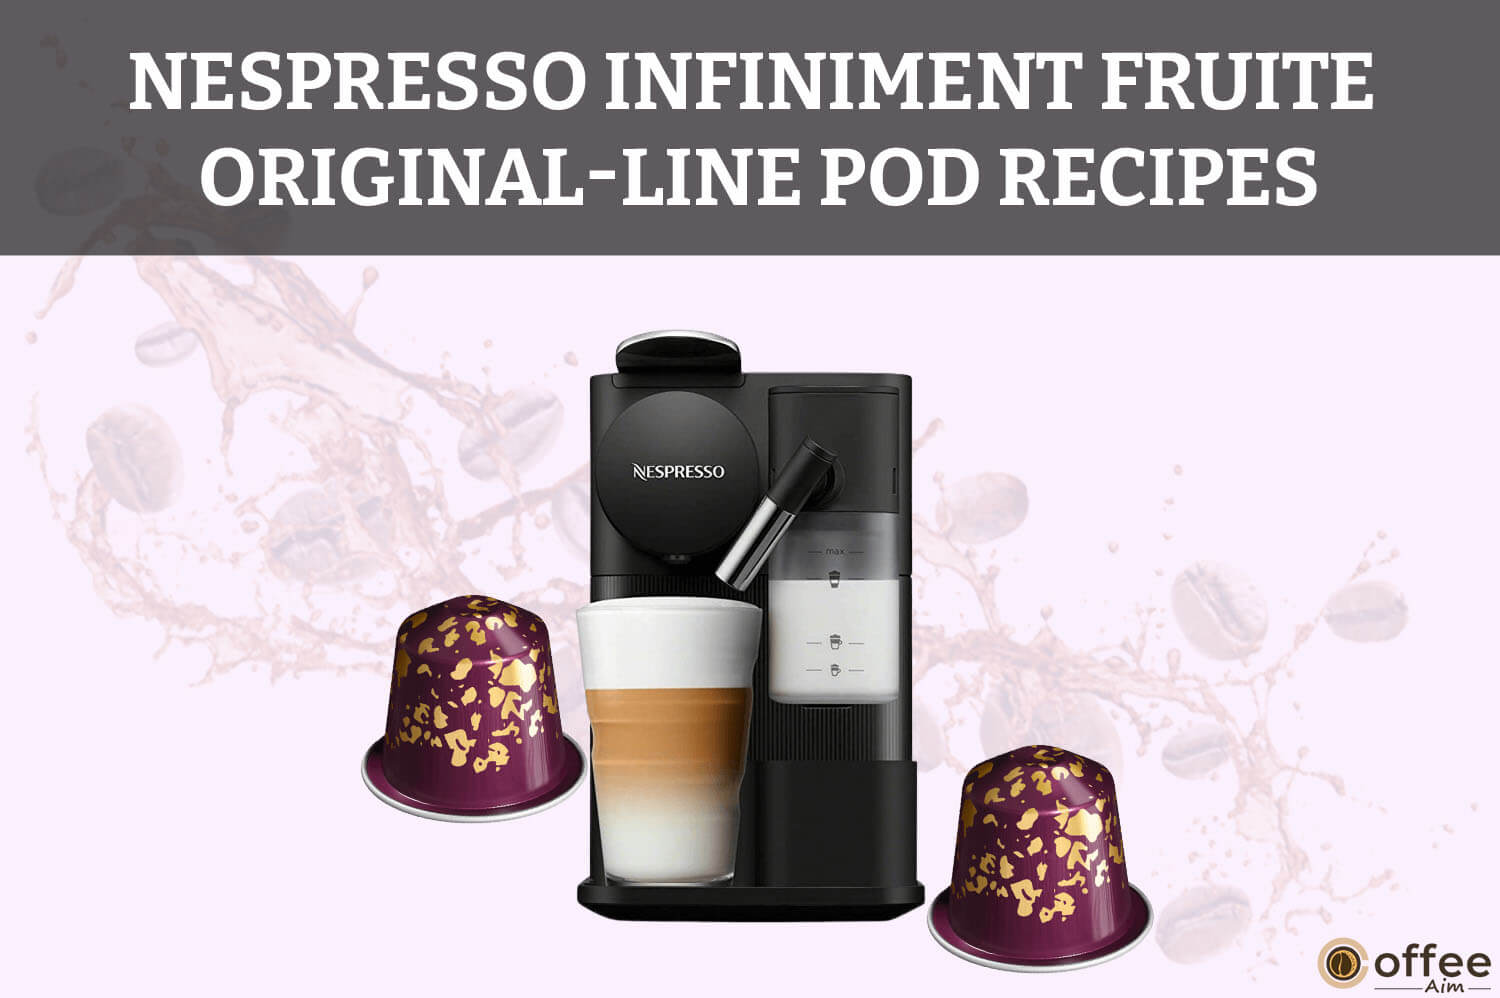 Nespresso-Original-Line-Infiniment-Fruite-Pod-Recipes